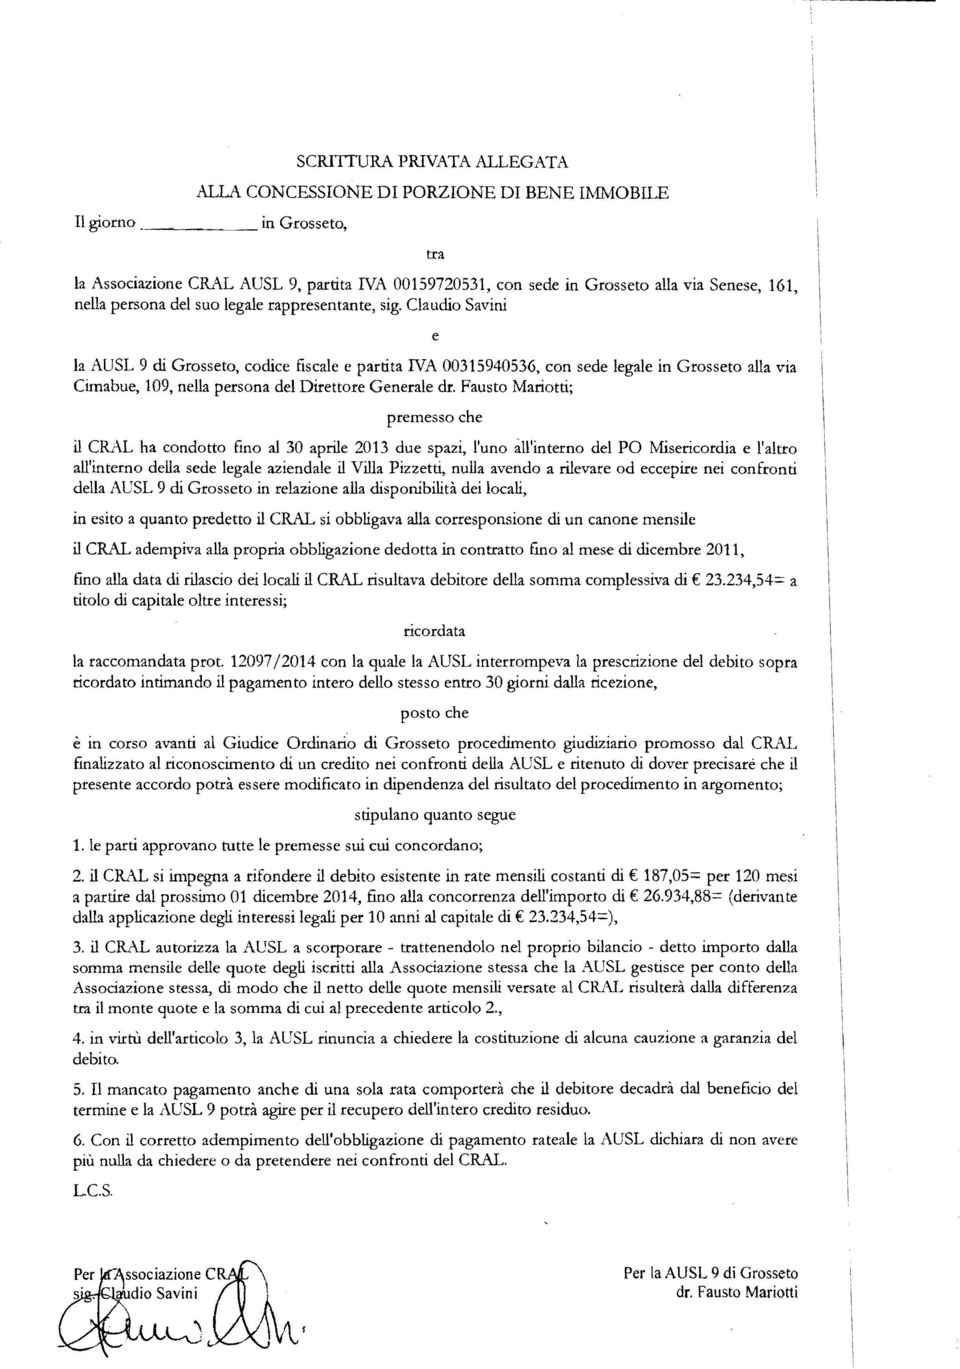 Claudio Savini e la AUSL 9 di Grosseto, codice fiscale e partita NA 00315940536, con sede legale in Grosseto alla via Cimabue, 109, nella persona del Direttore Generale dr.